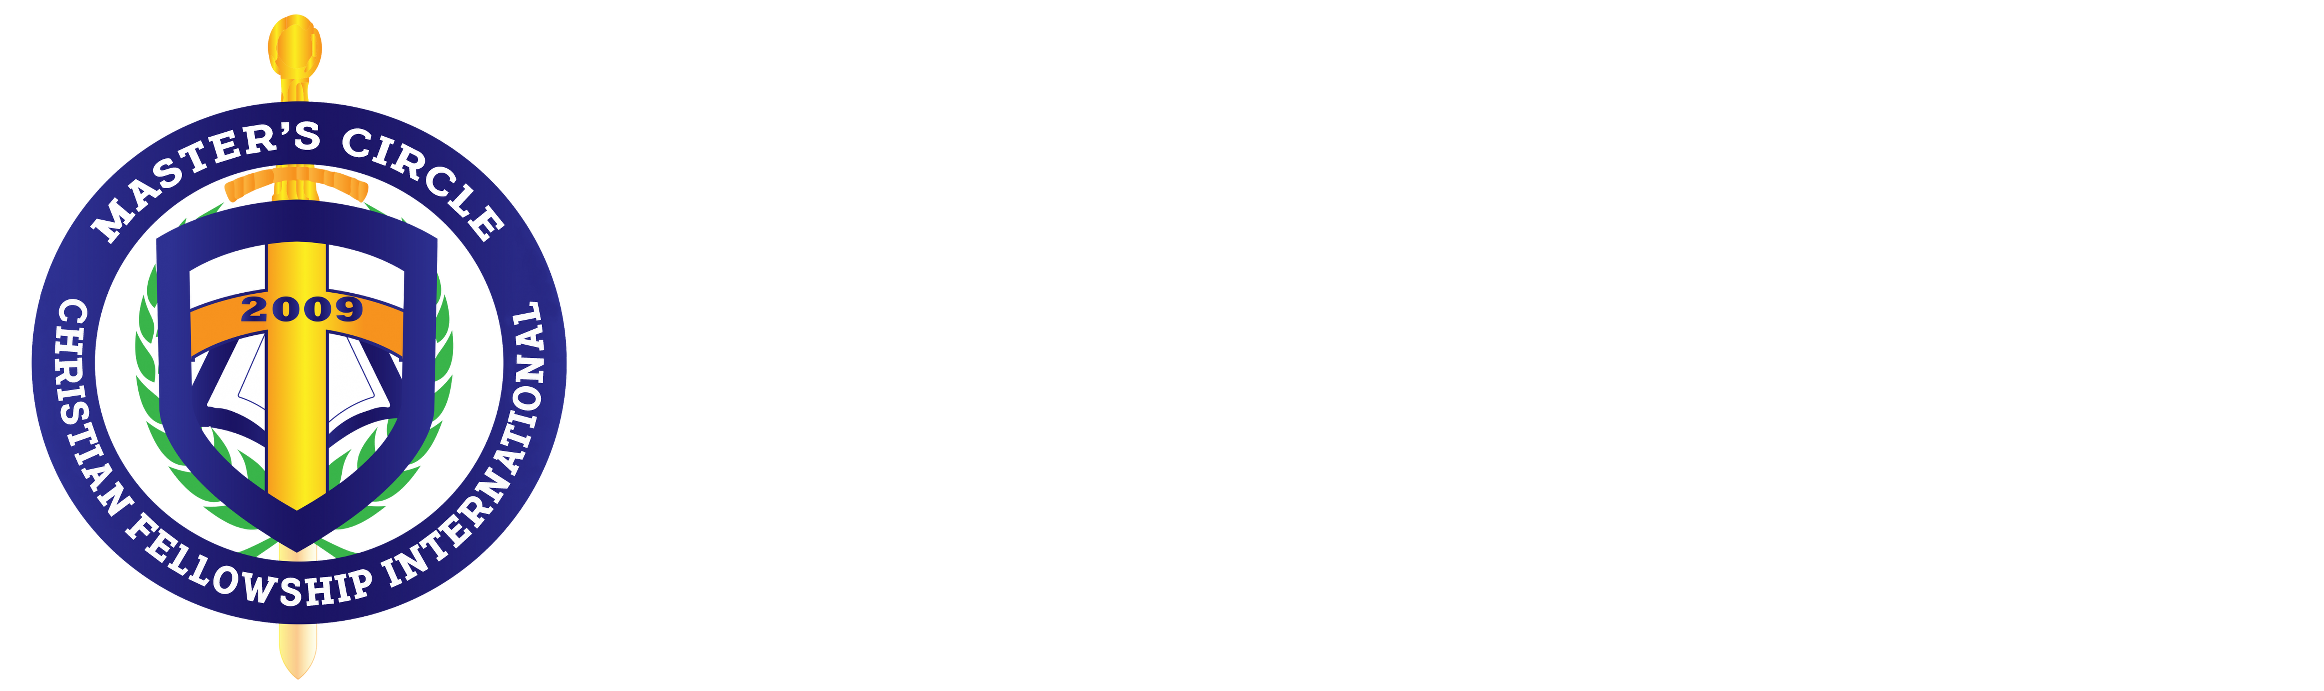 Masters Circle